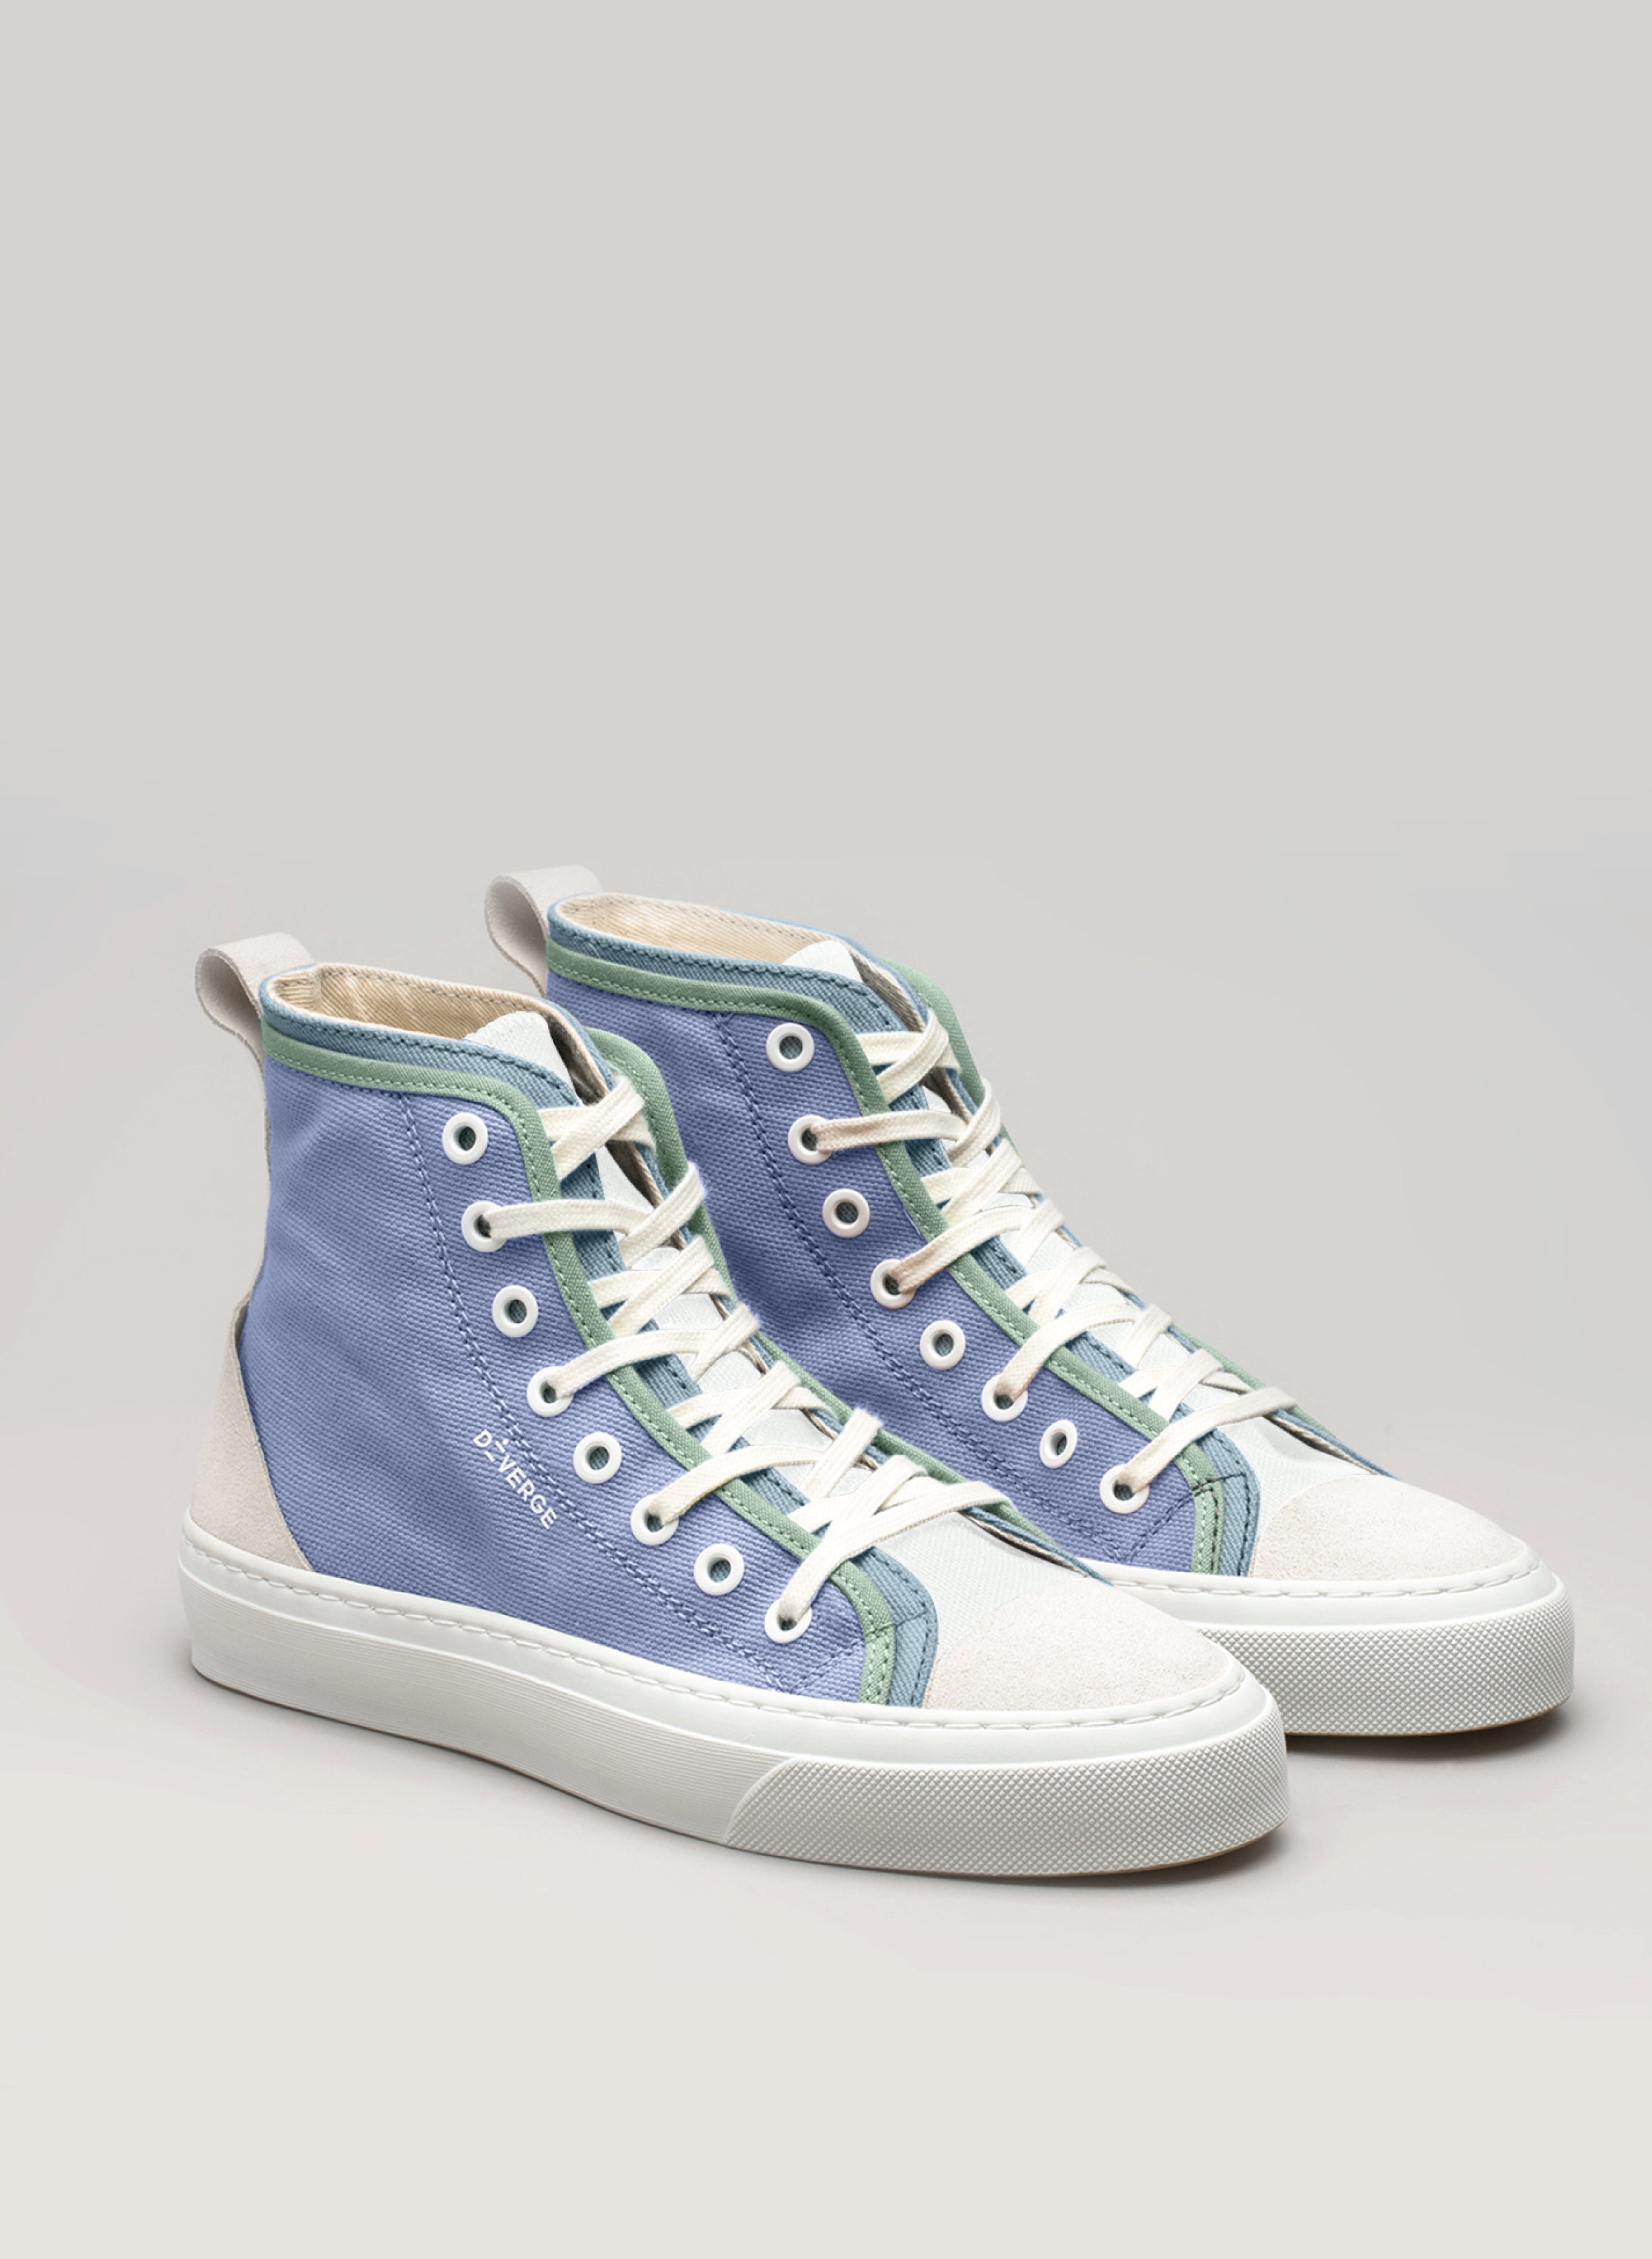 Chaussures montantes bleues et vertes Diverge sneakers  avec lacets blancs, une paire de chaussures personnalisées.